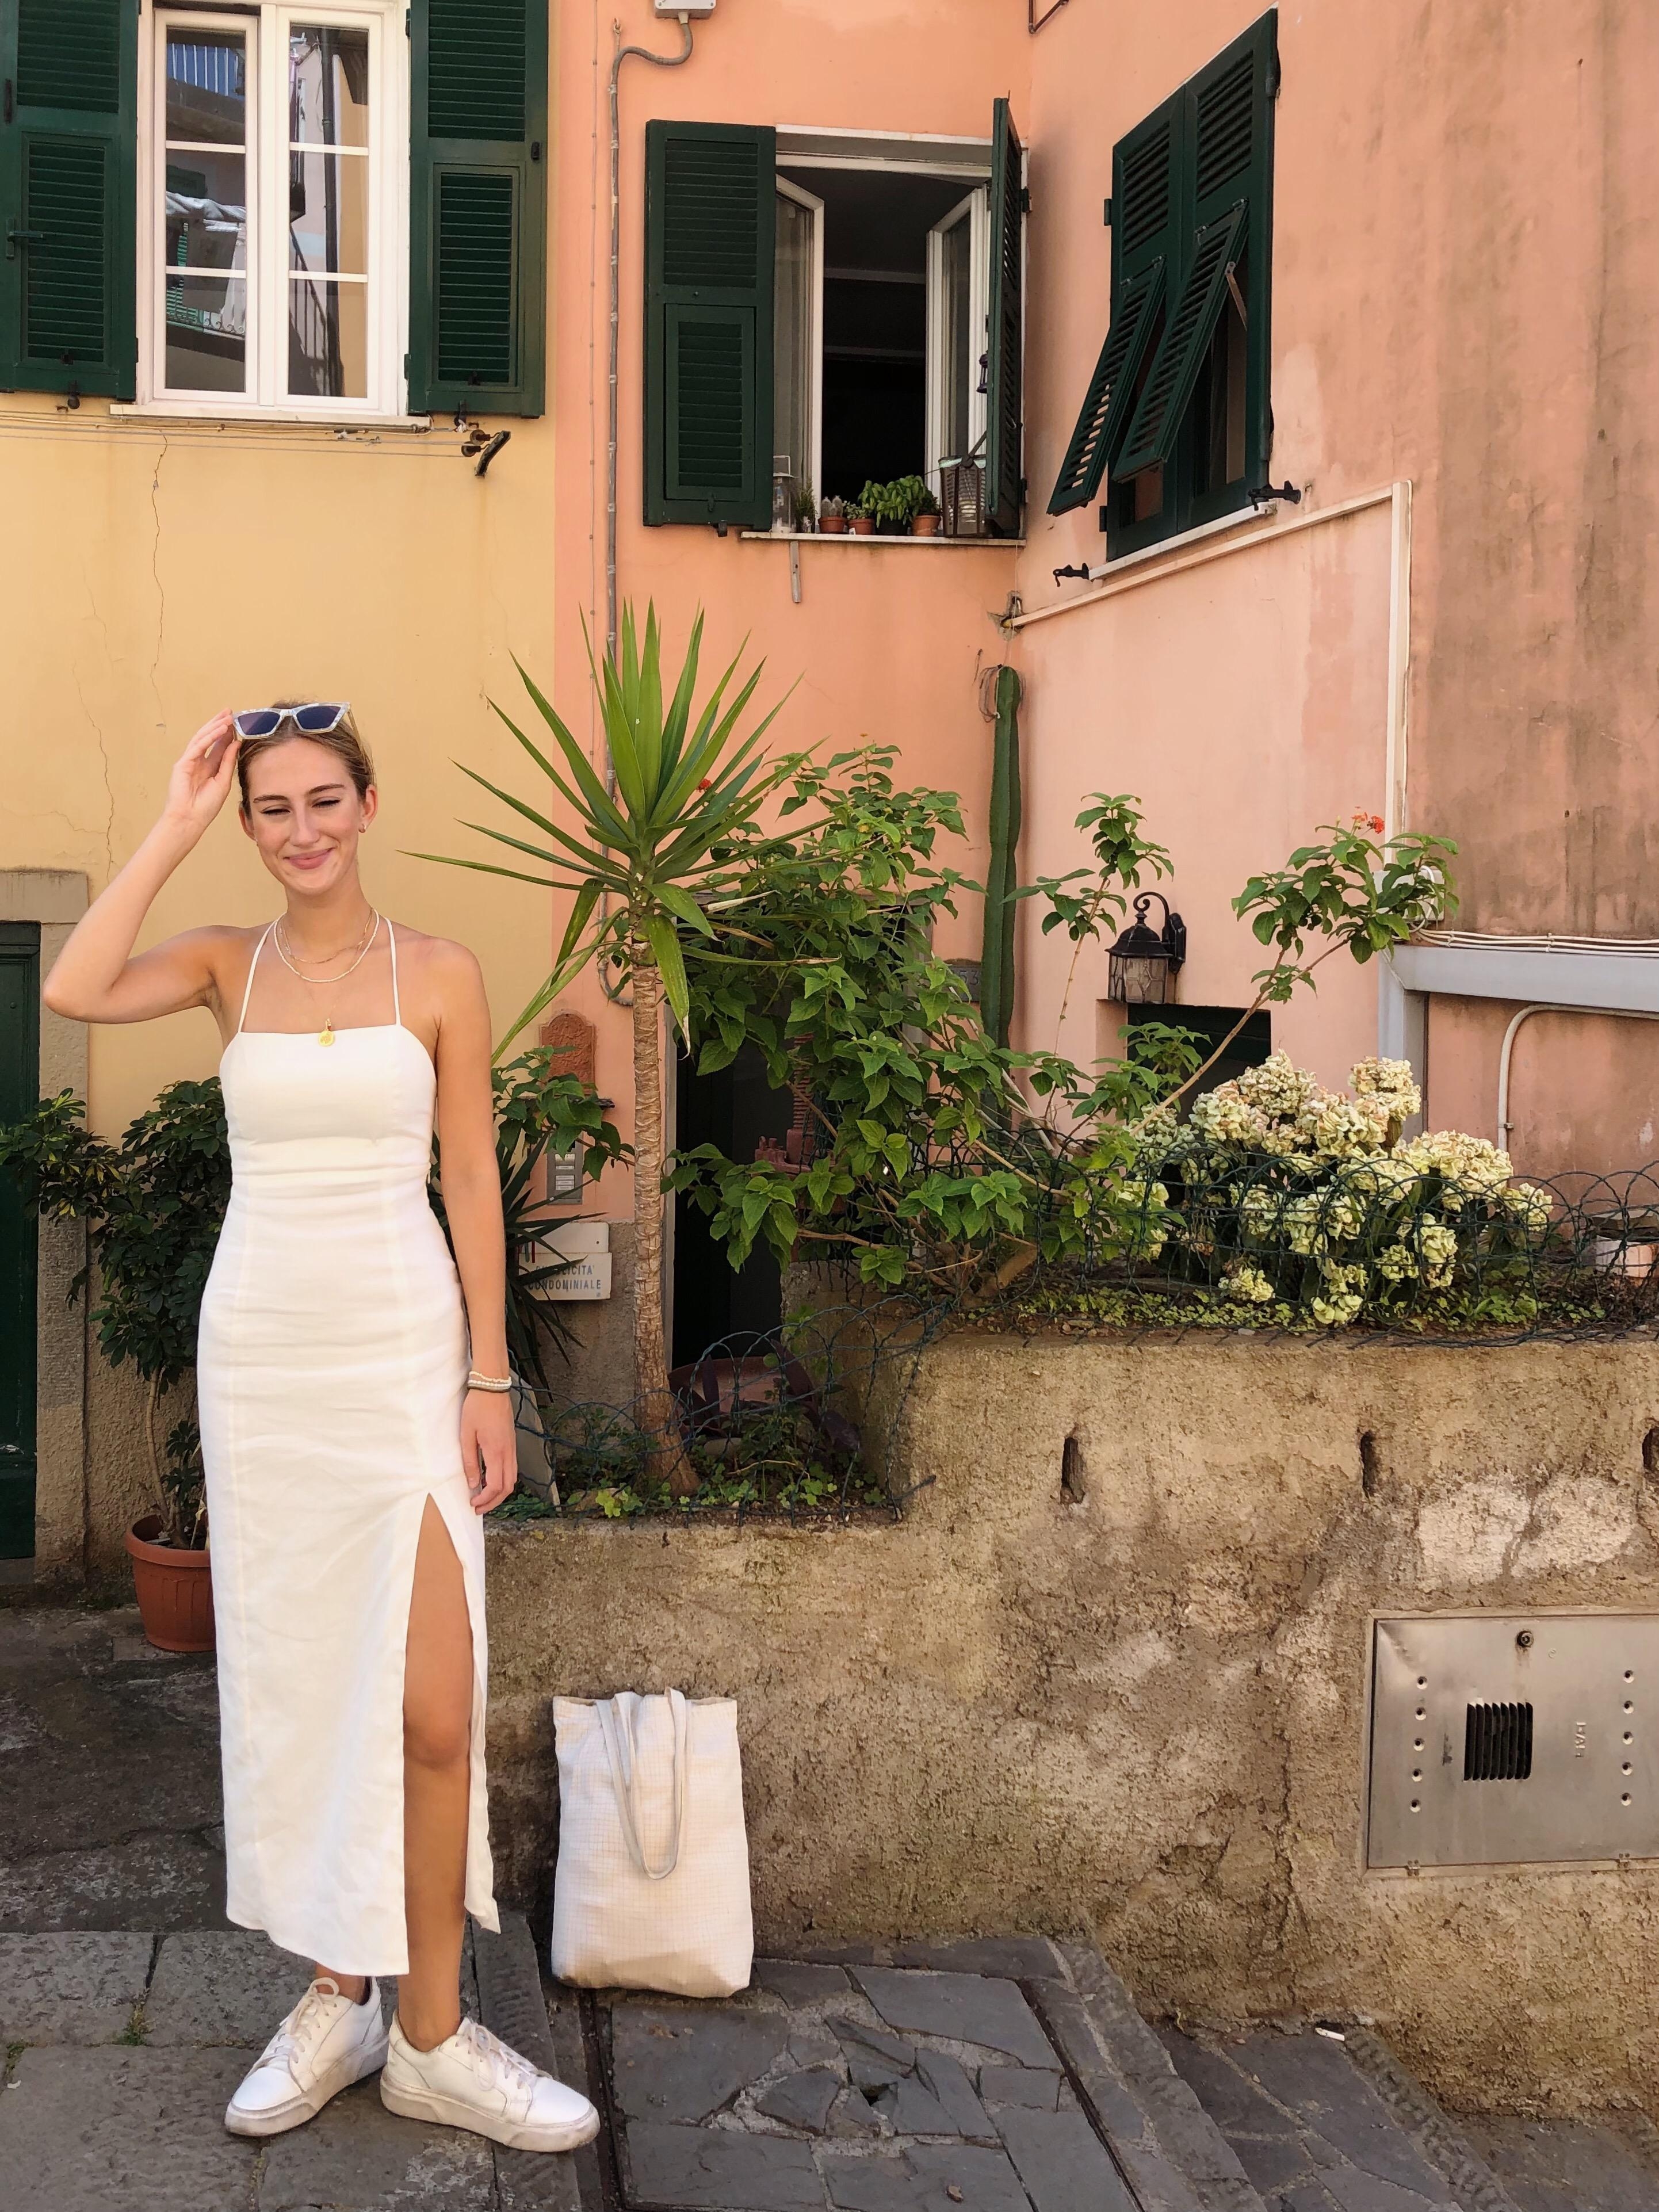 Toskanaliebe #toskana #terracotta #italien #dolcevita #bellaitalia #reiselust #urlaub #auslandssemester #pastellfarben